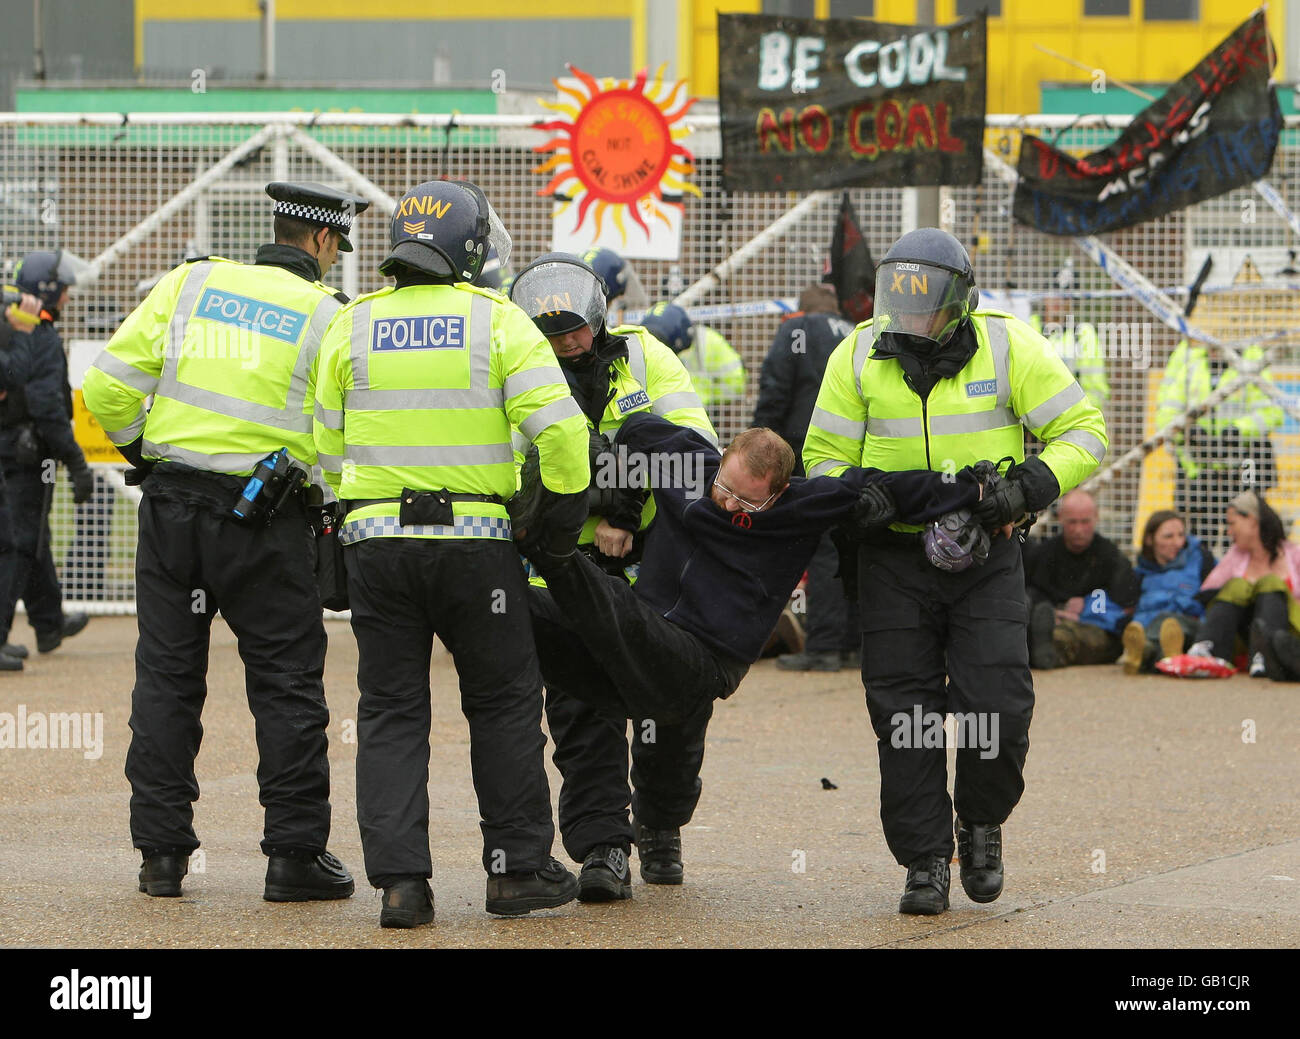 Campo d'azione per il clima. Gli ufficiali di polizia arrestano un protester ambientale fuori dalla centrale elettrica di Kingsnord vicino a Hoo nel Kent. Foto Stock